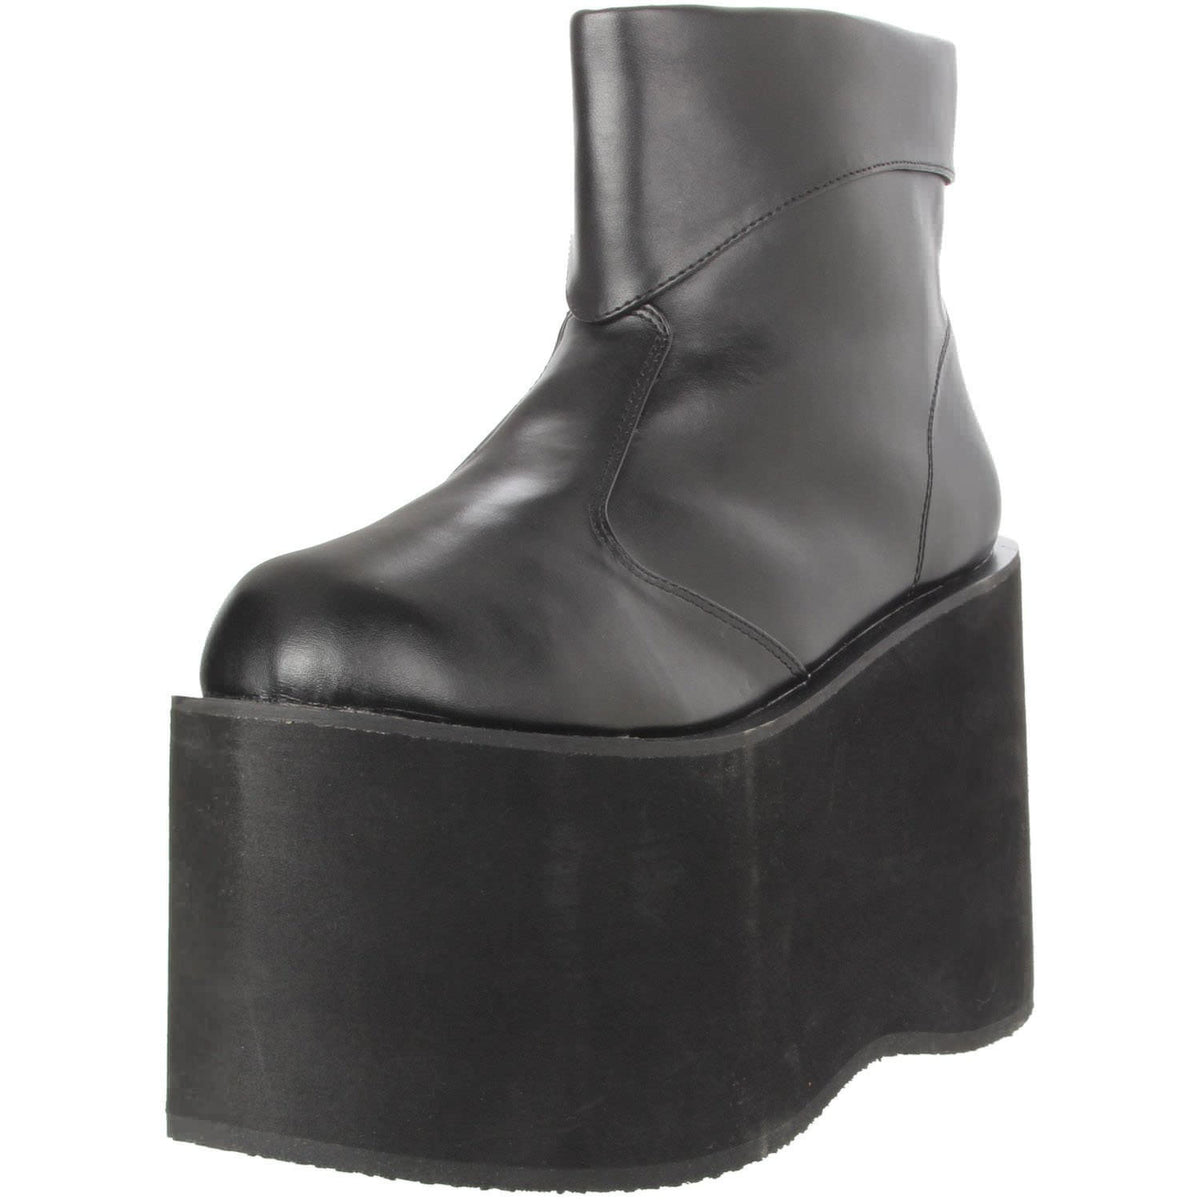 Men's Black Frankenstein Boots - Shoecup.com - 1